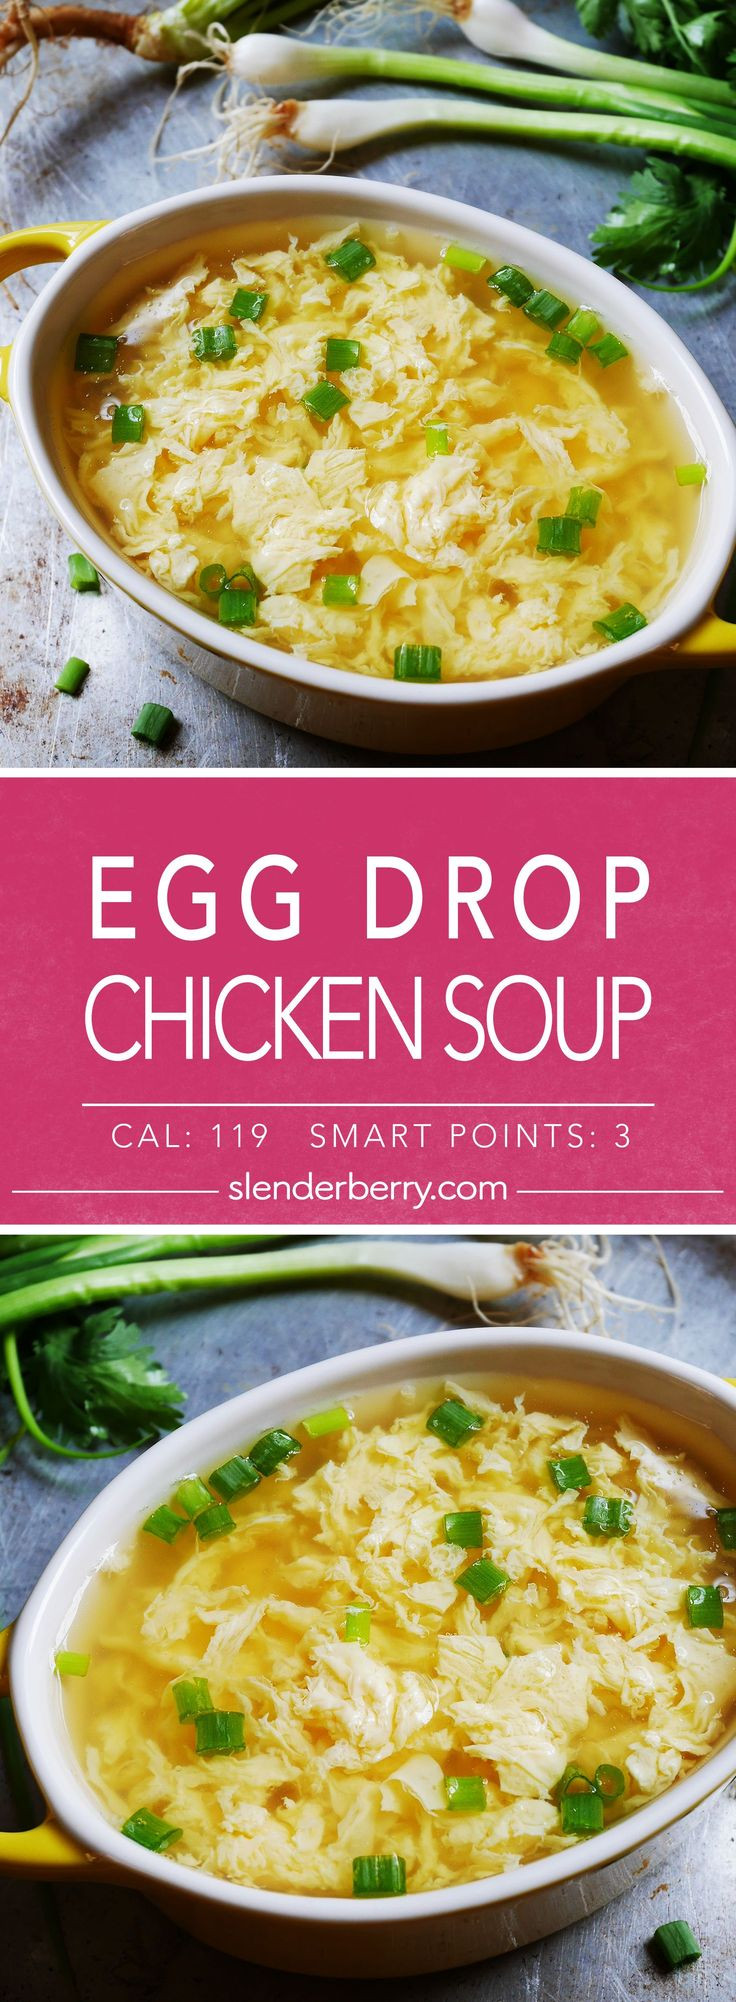 Low Calorie Chicken Soup Recipes
 Low Calorie Egg Drop Chicken Soup Recipe 119 Calories